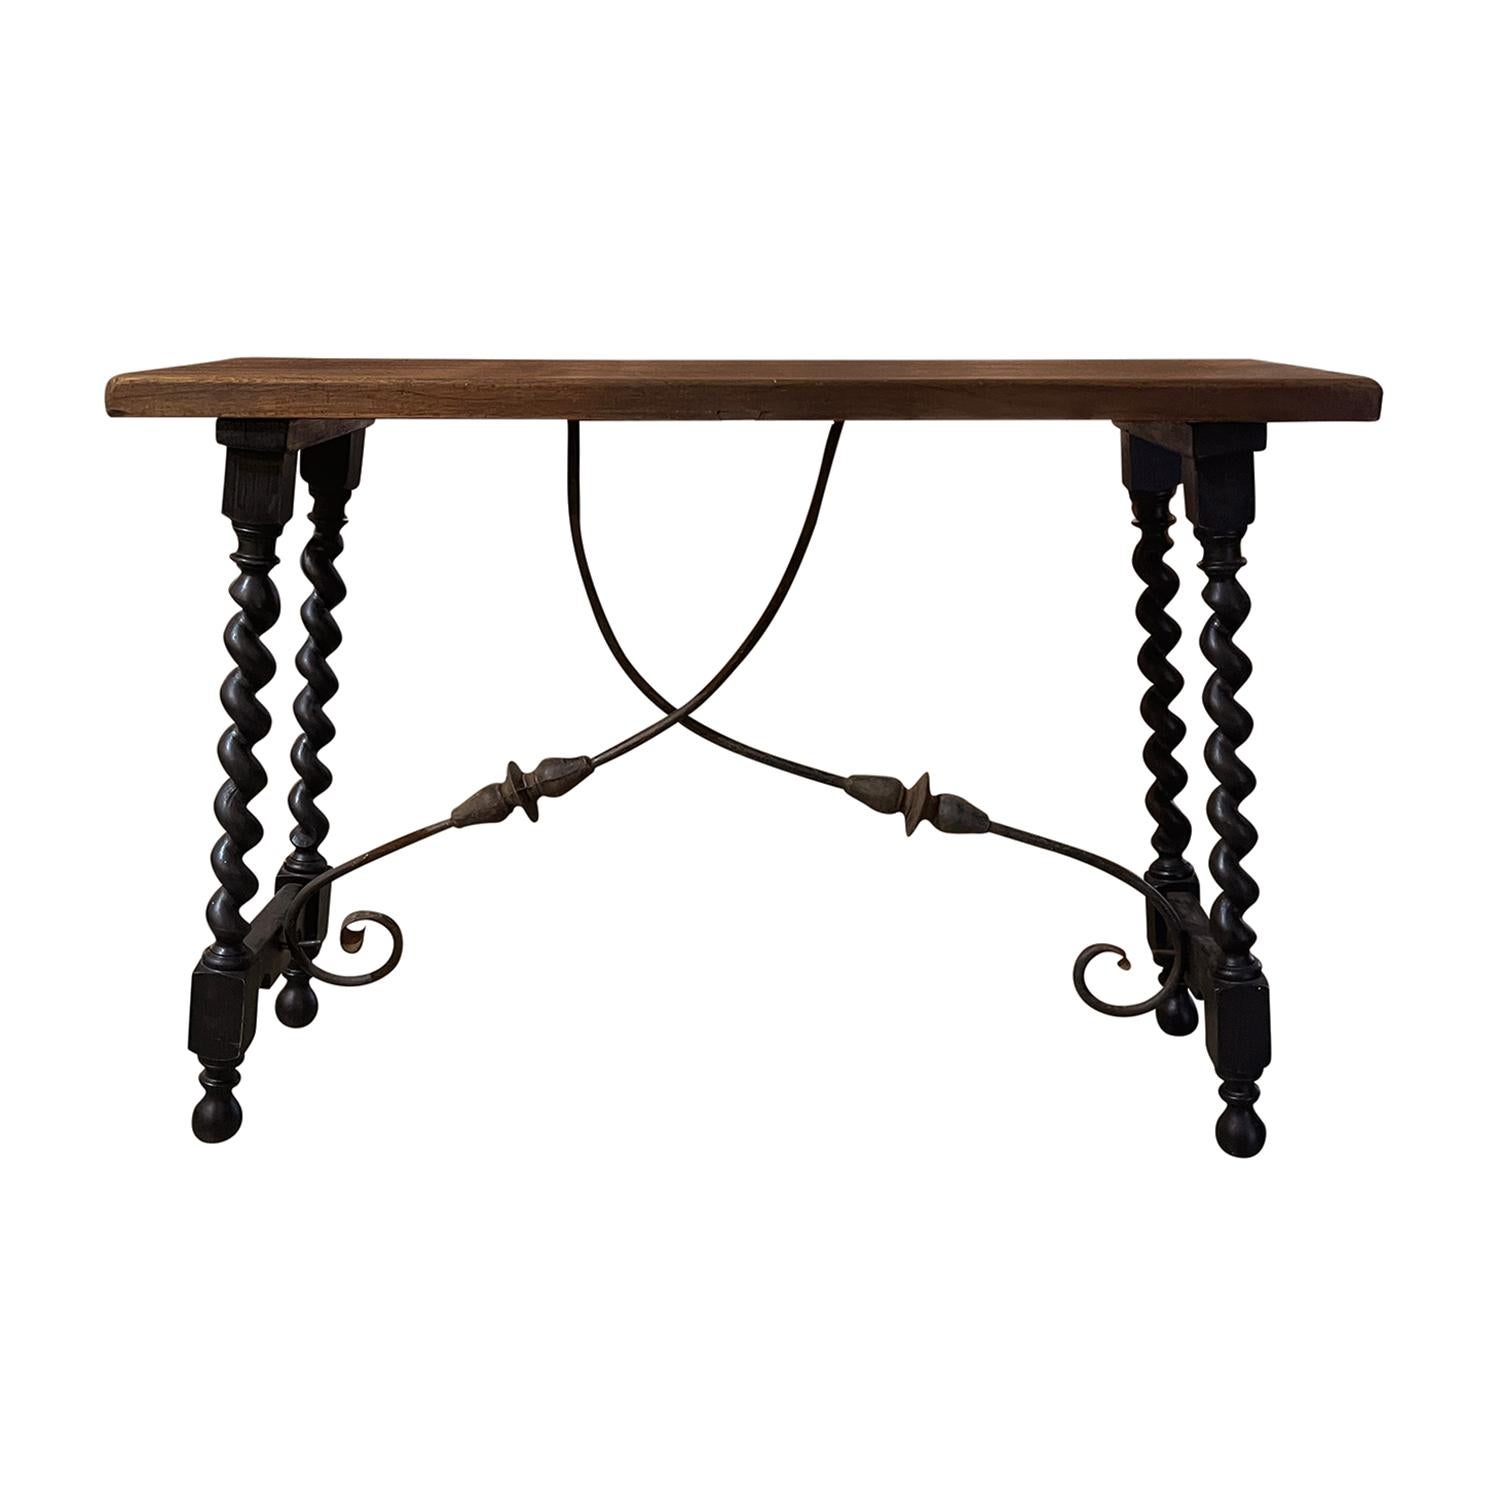 Ein antiker Tisch oder eine Konsole im toskanischen Renaissancestil des 19. Jahrhunderts mit einer warmen und reich gefärbten rechteckigen Tischplatte aus Nussbaum, in gutem Zustand. Der Tisch hat gedrechselte Beine aus Nussbaum, die mit dunklem